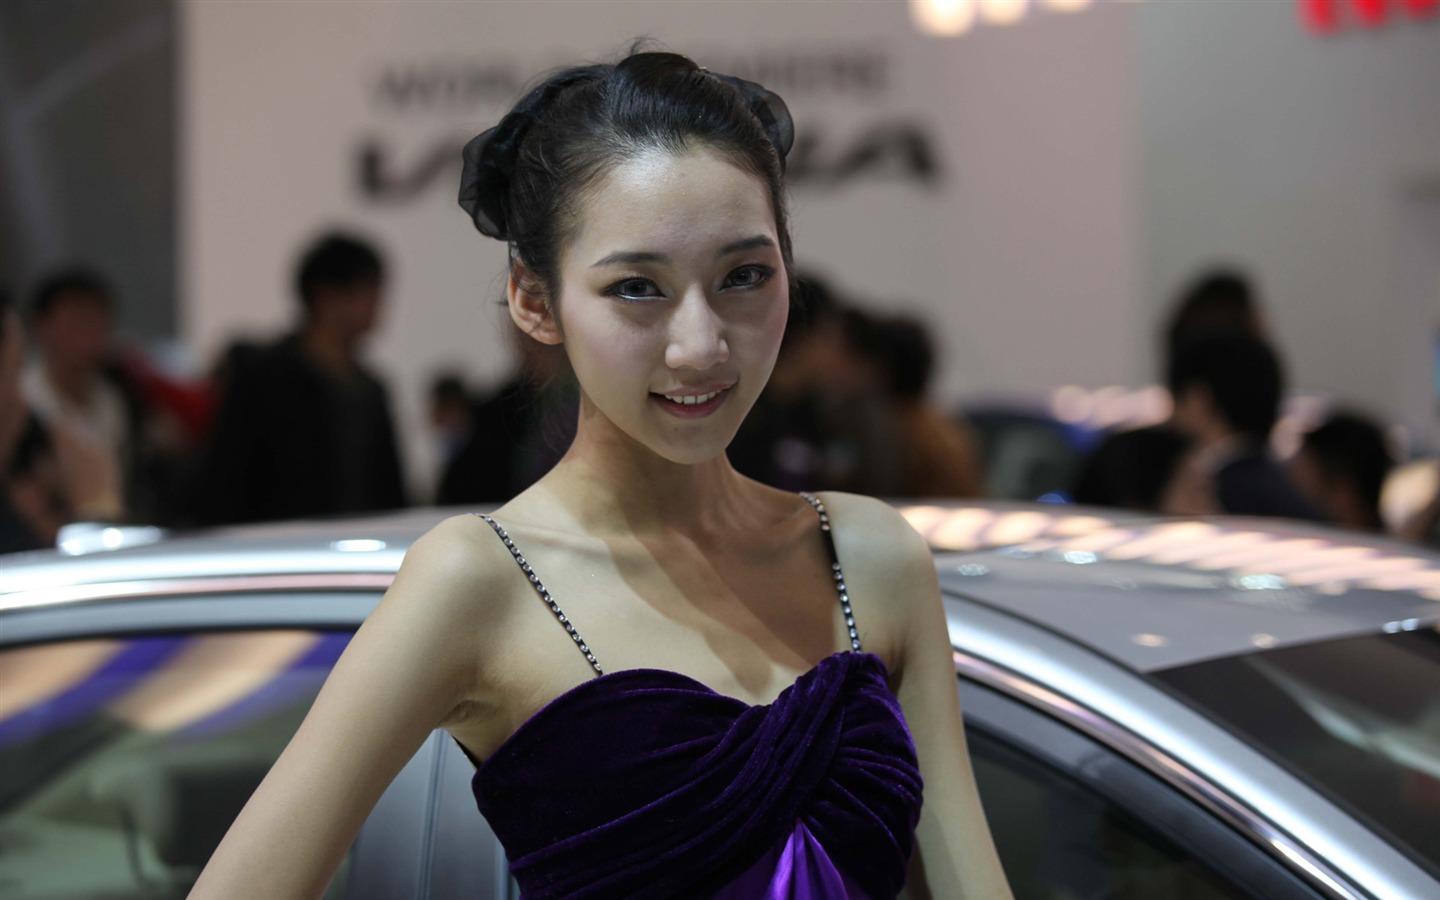 2010 v Pekingu Mezinárodním autosalonu krása (1) (vítr honí mraky práce) #21 - 1440x900